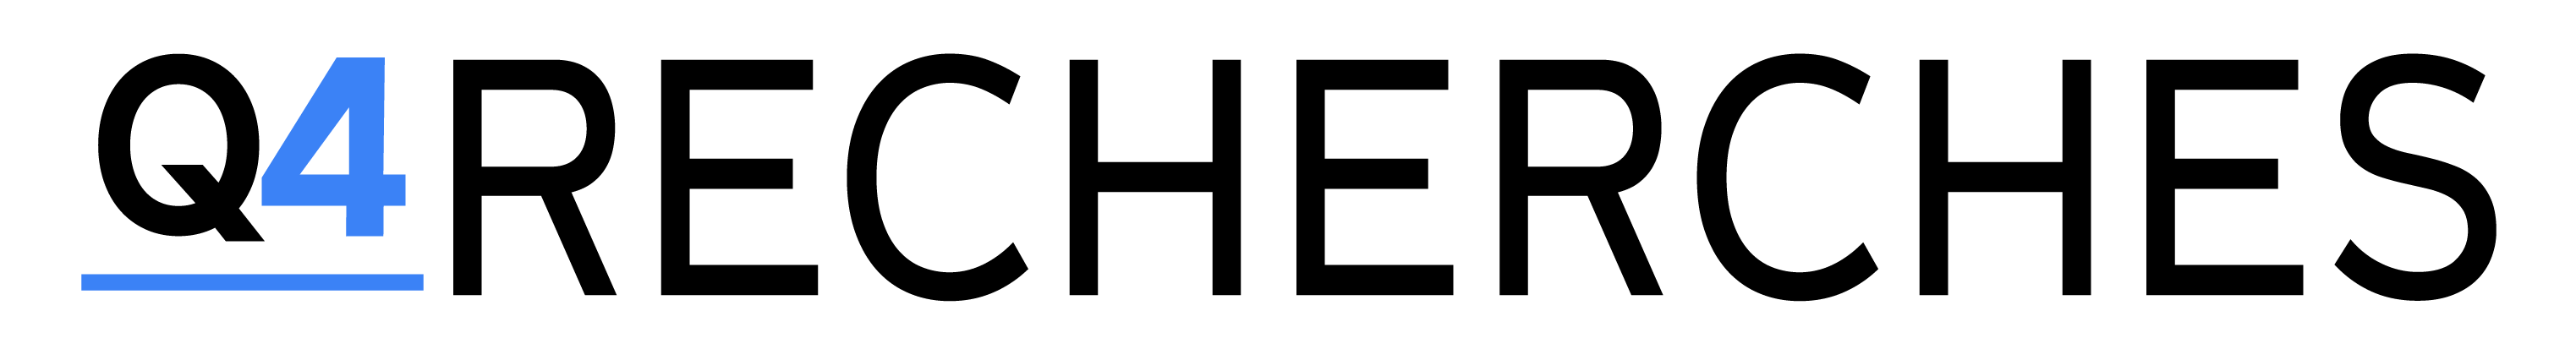 Logo-Q4-recherches-3000x400